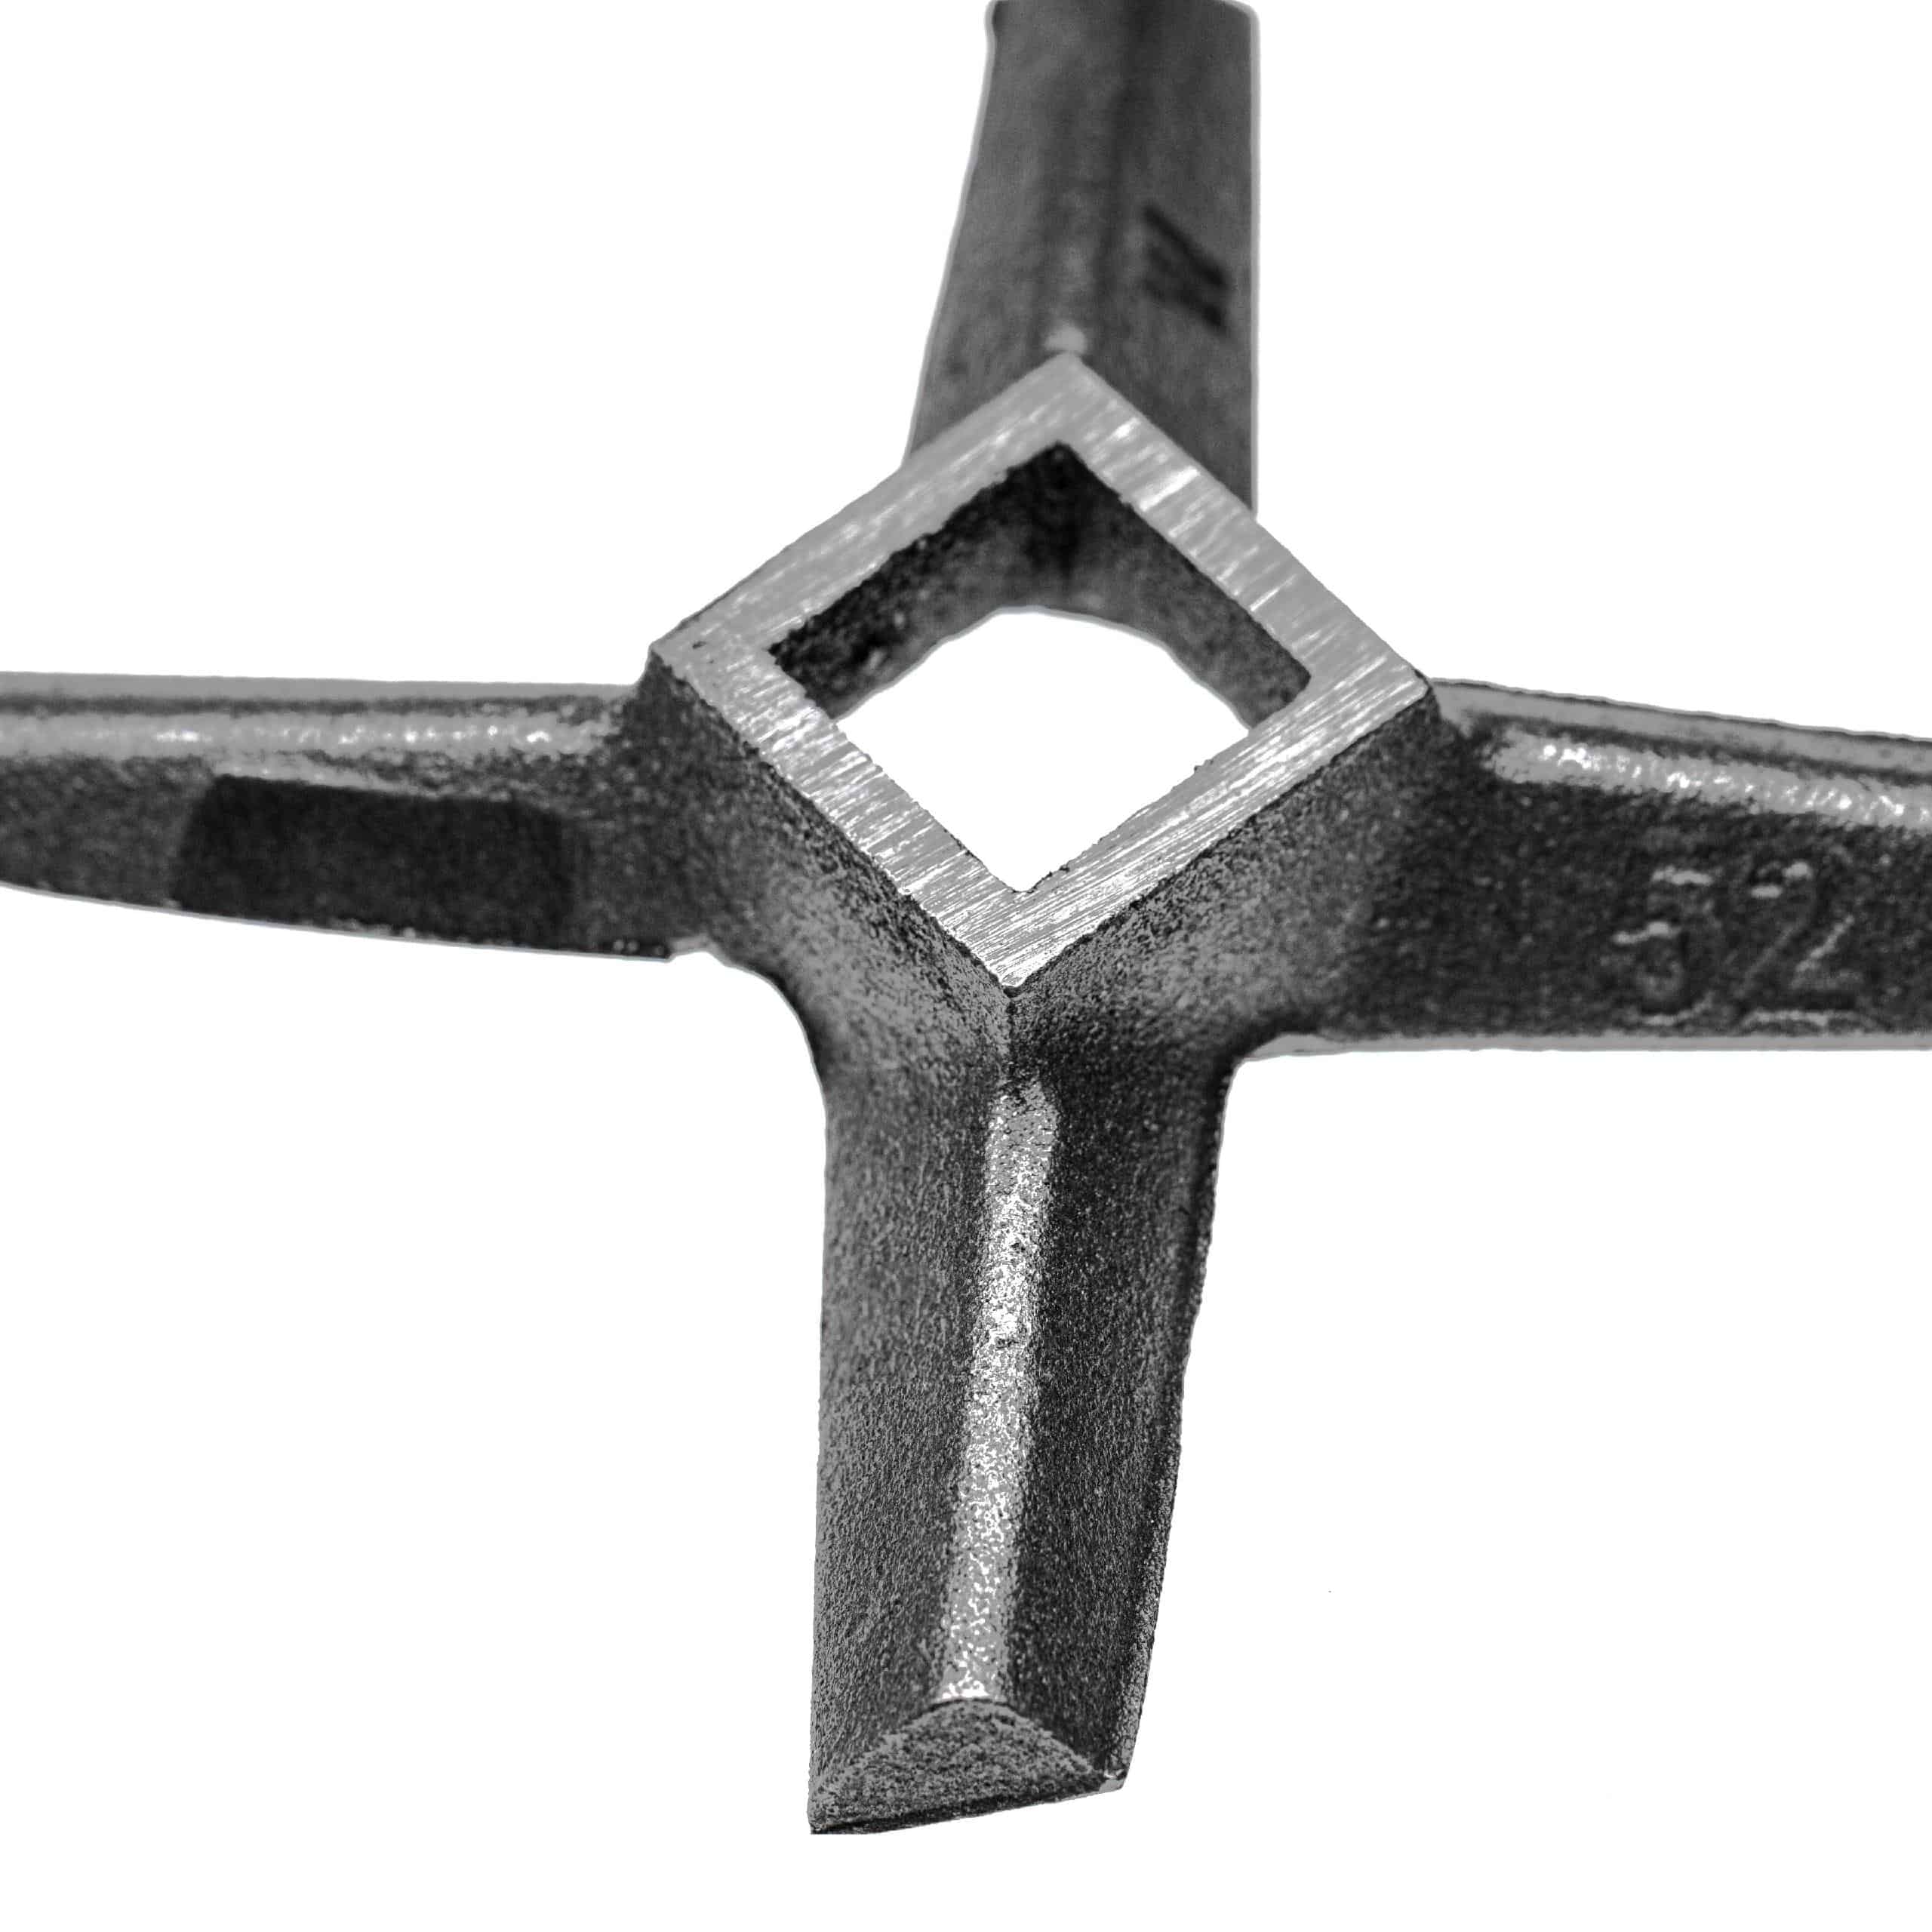 Cuchilla en cruz nº. 52 para picadoras por ej. compatible con ADE, Caso, Fama - cuadrado 23,3 x 23,3 mm